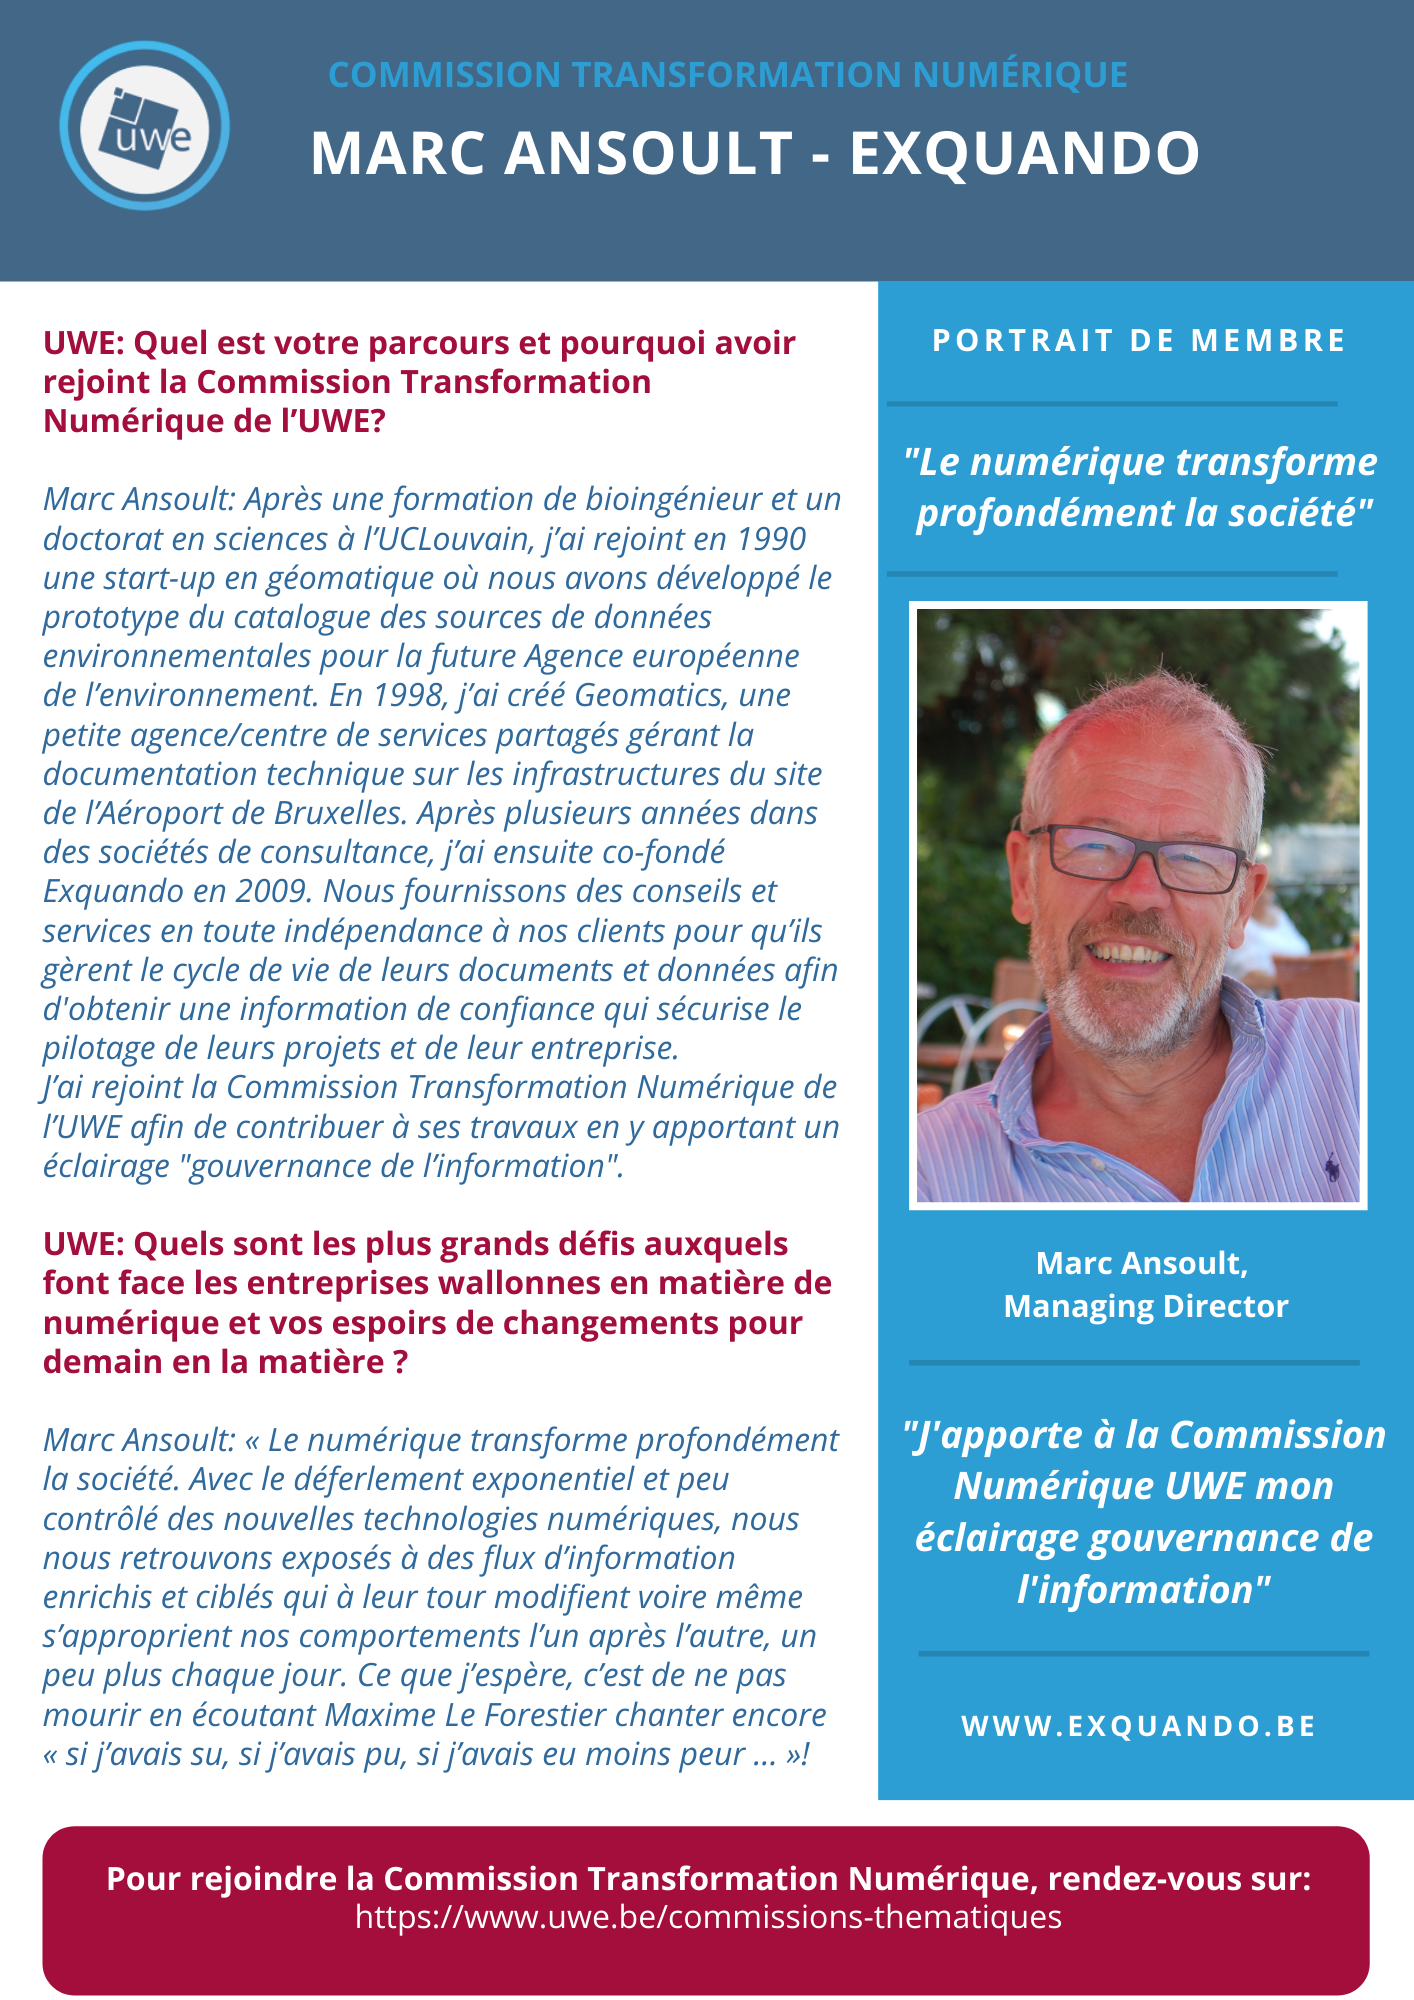 Commission Transformation Numérique de l'UWE. Portrait de membre: Marc Ansoult, Exquando